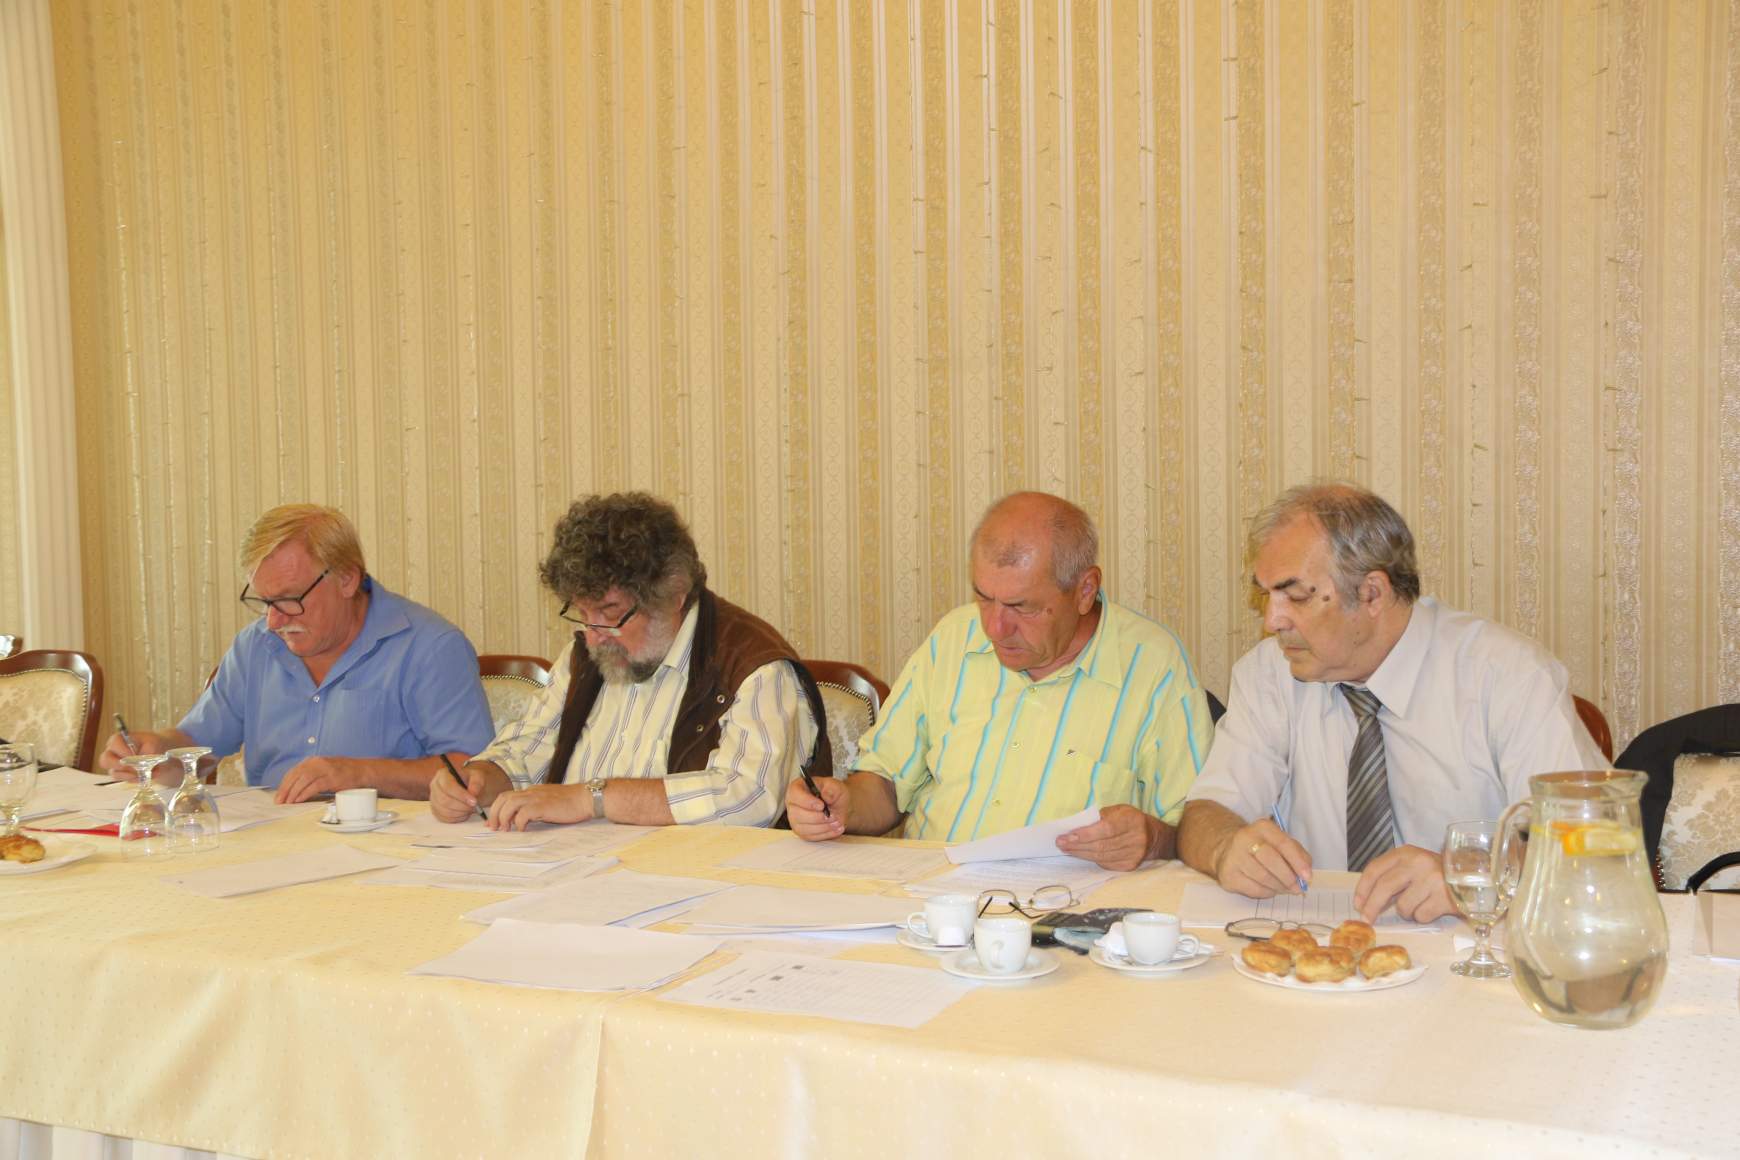 A zsűri tagjai (jobbról): Böröndi Lajos, Lacza Tihamér, Kovács László (elnök), Varga László